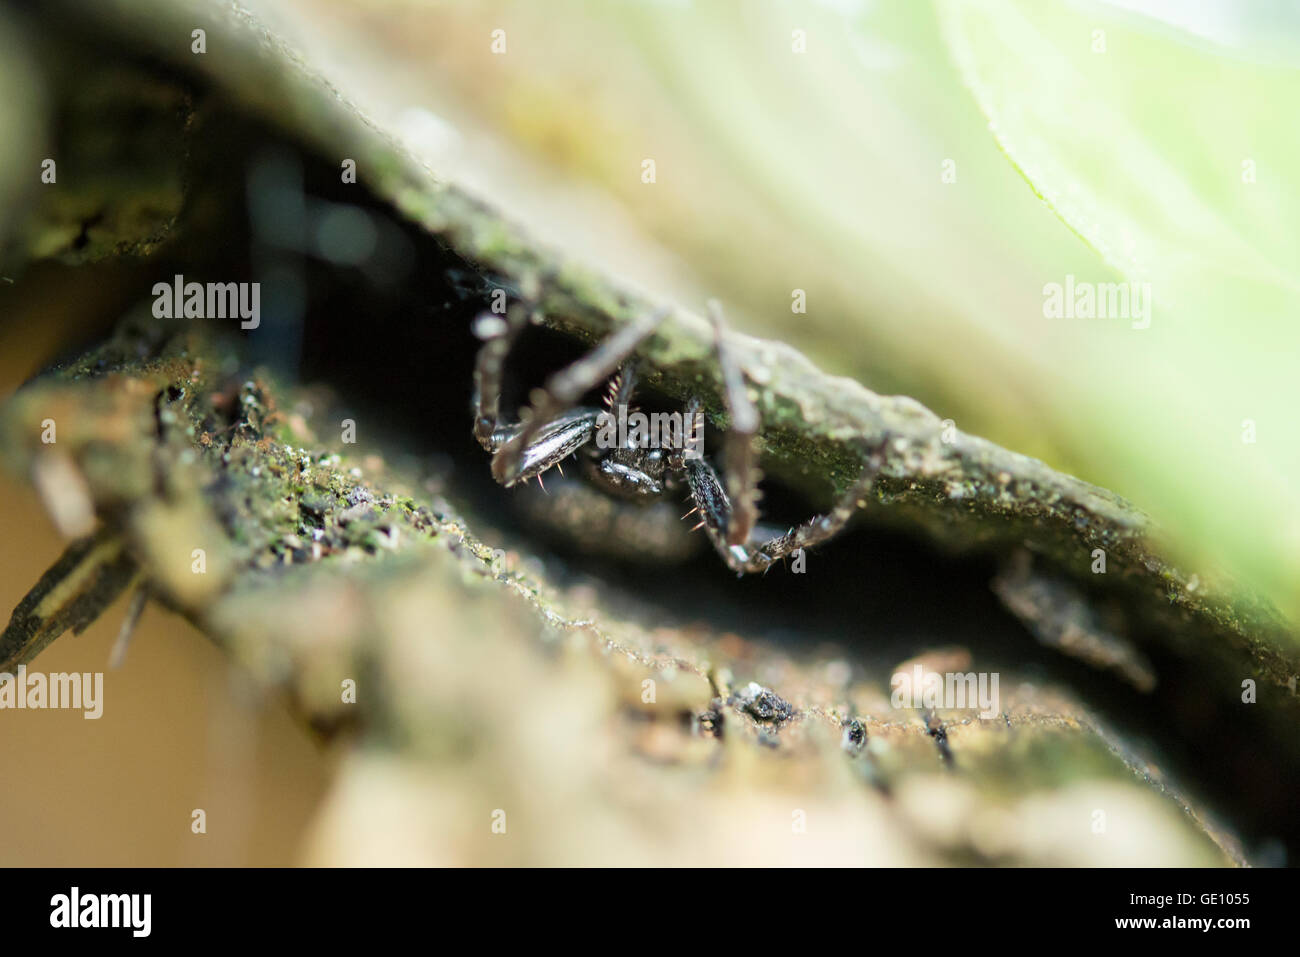 Fett Spinne Stockfotos und -bilder Kaufen - Alamy